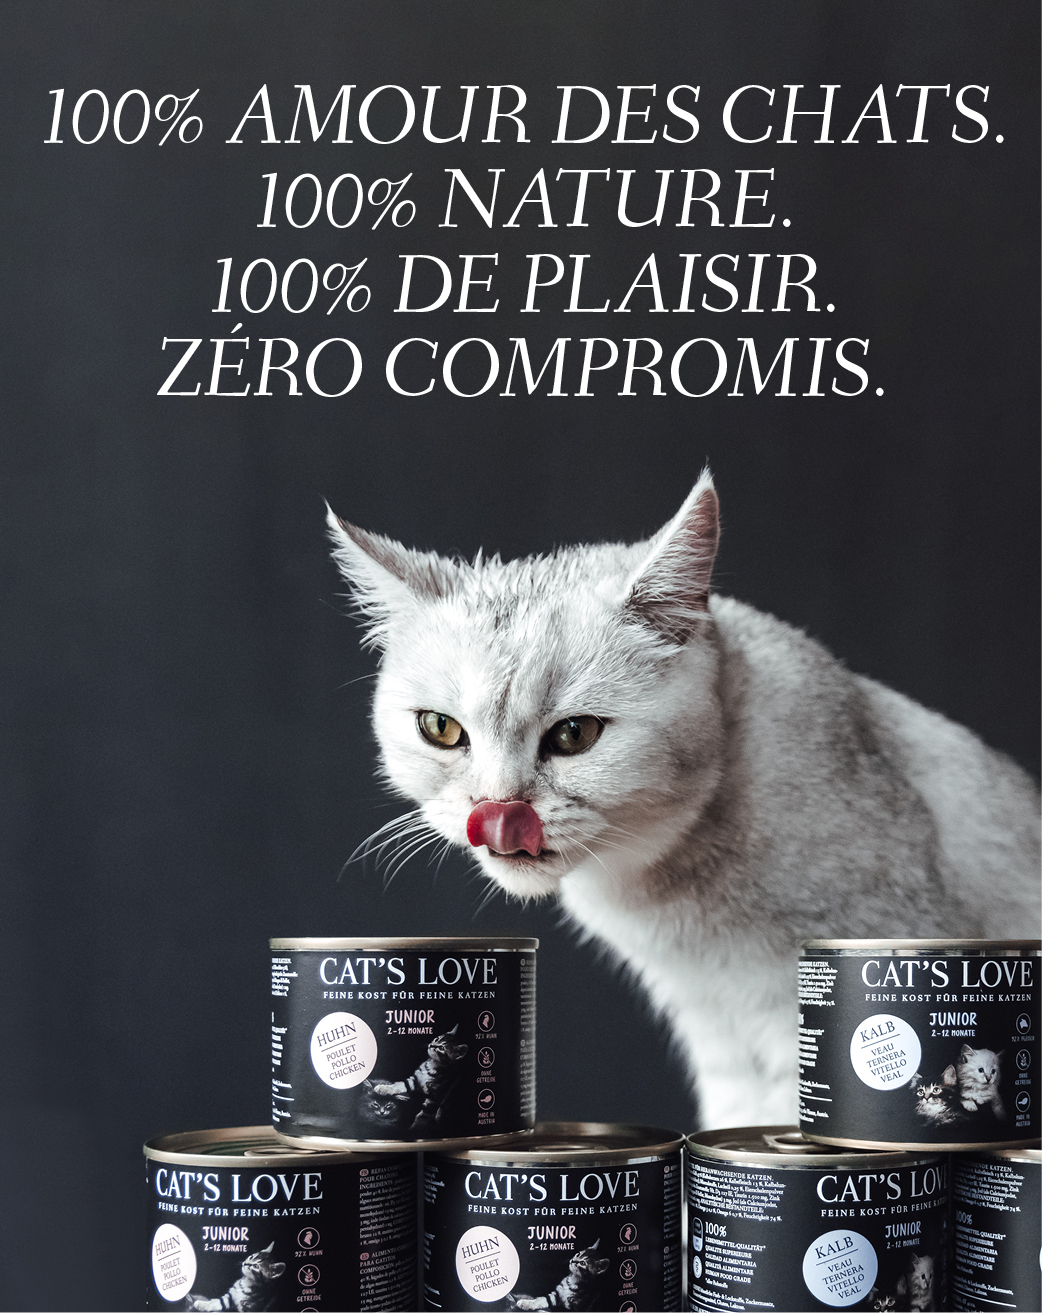 Bannière avec un chat qui se lèche la gueule et sur laquelle des produits CAT'S LOVE sont présentés devant lui. Le texte sur la bannière dit : 100% AMOUR DES CHATS. 100% NATURE. 10% DE PLAISIR. Pas de compromis.